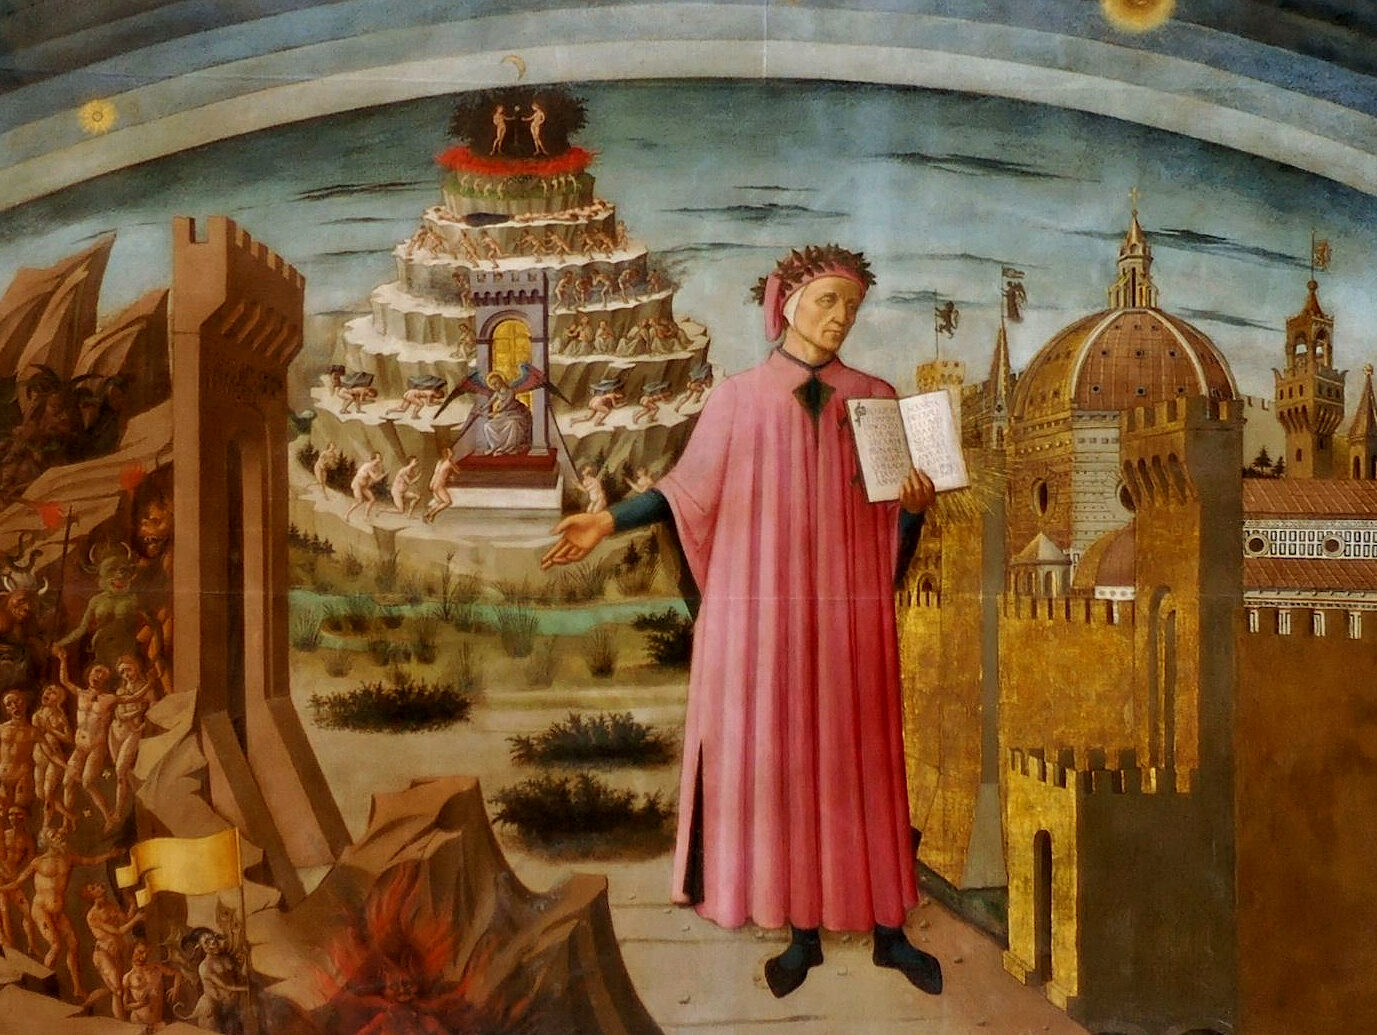 La Vida Nueva de Dante: Una Obra Clave en la Literatura Medieval.